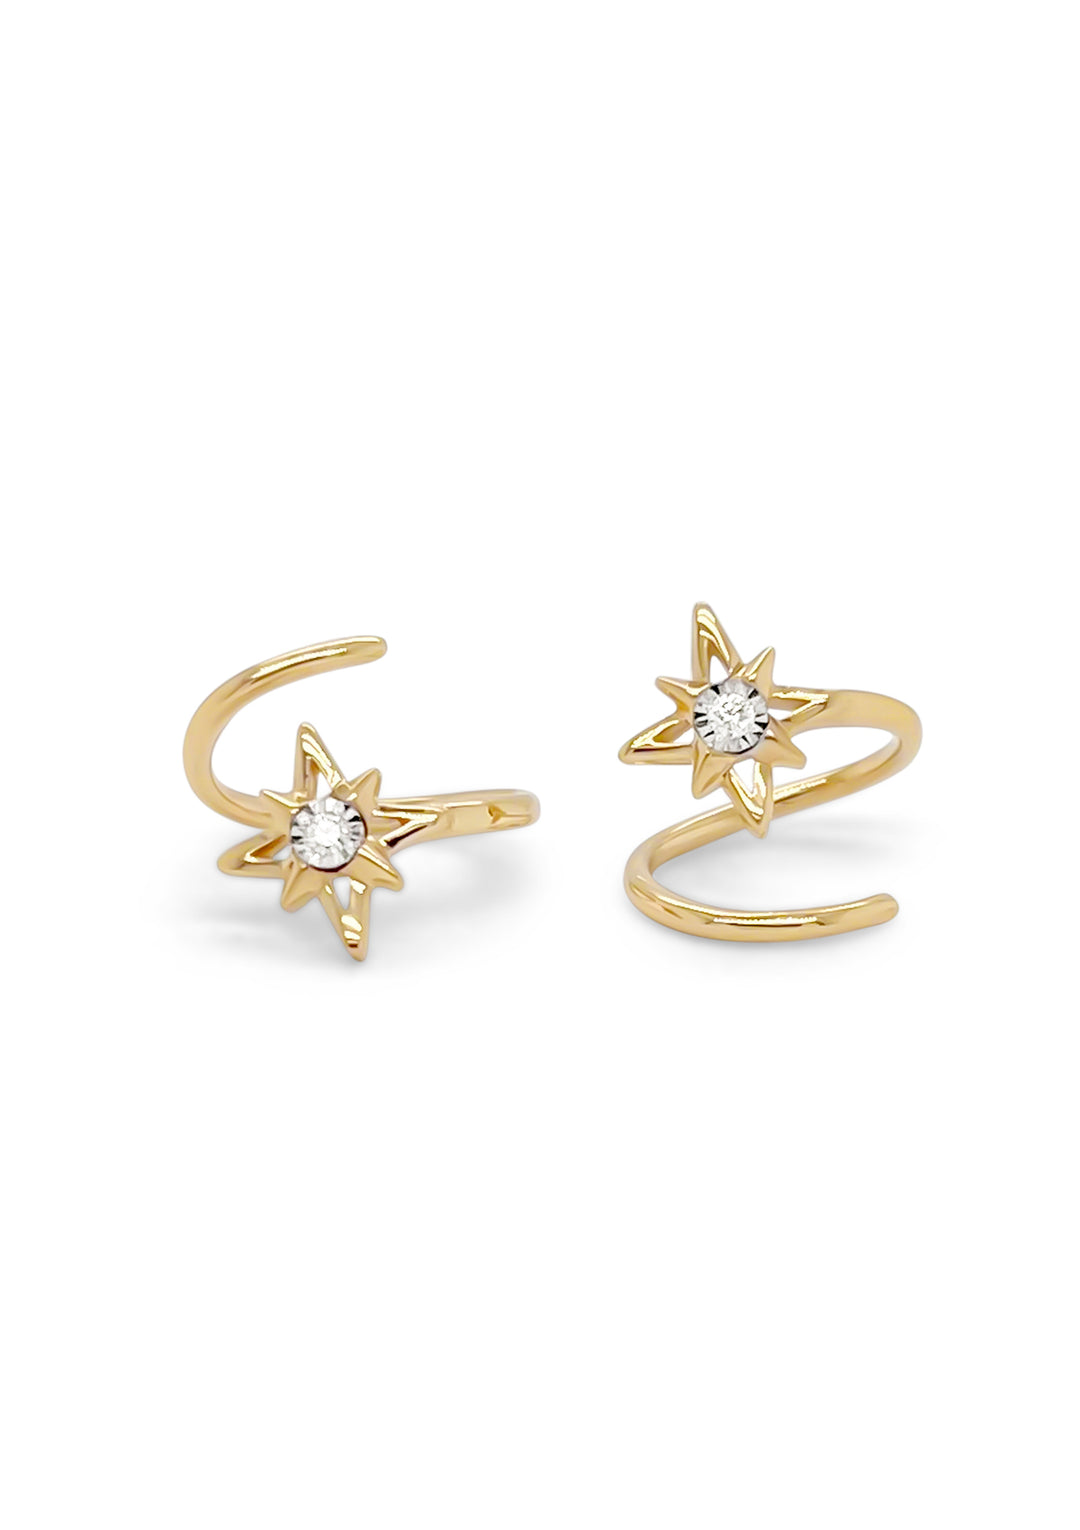 14K Yellow Gold Diamond Twist Star Earrings